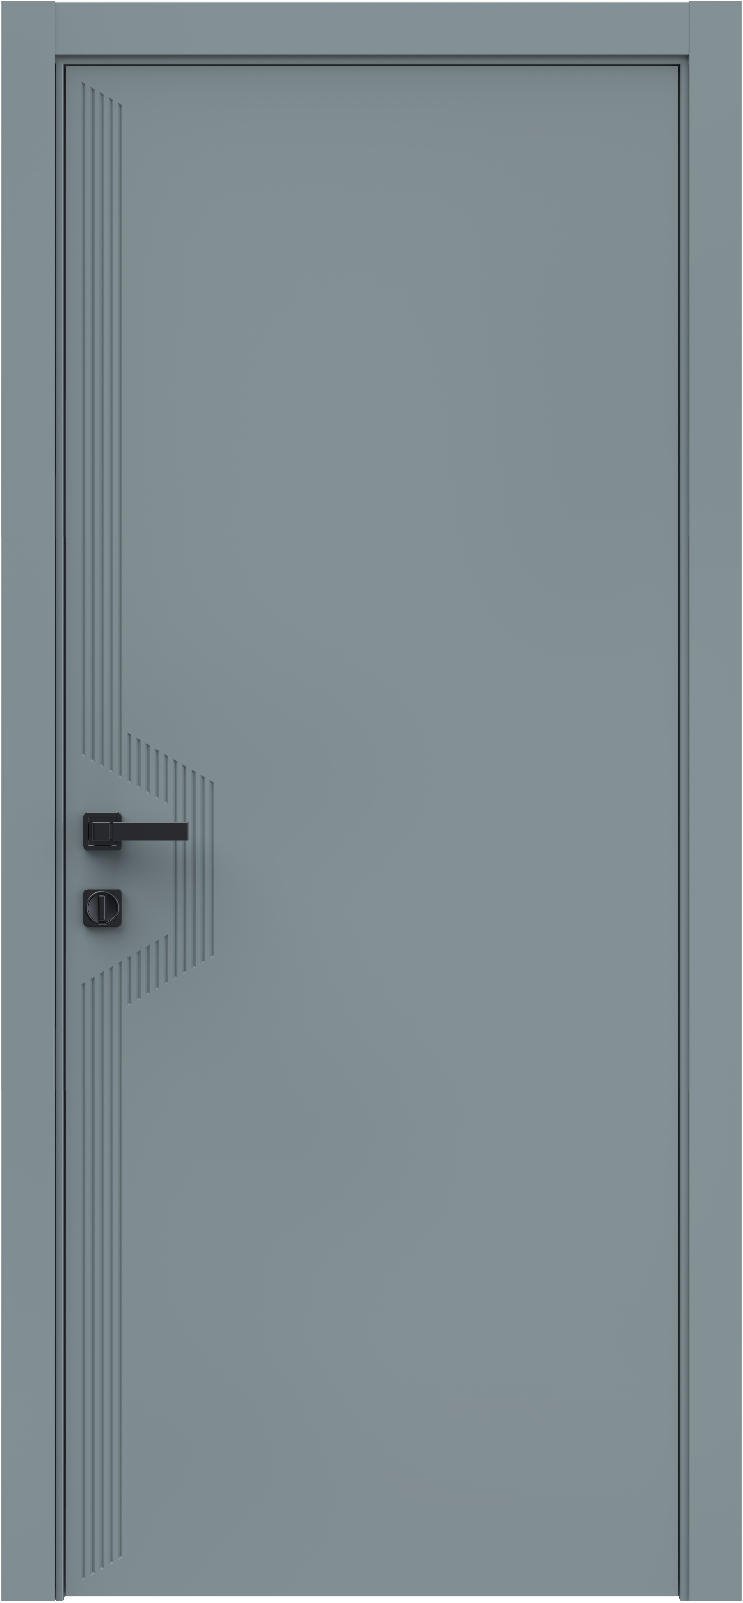 Questdoors Межкомнатная дверь QMS19, арт. 26293 - фото №1